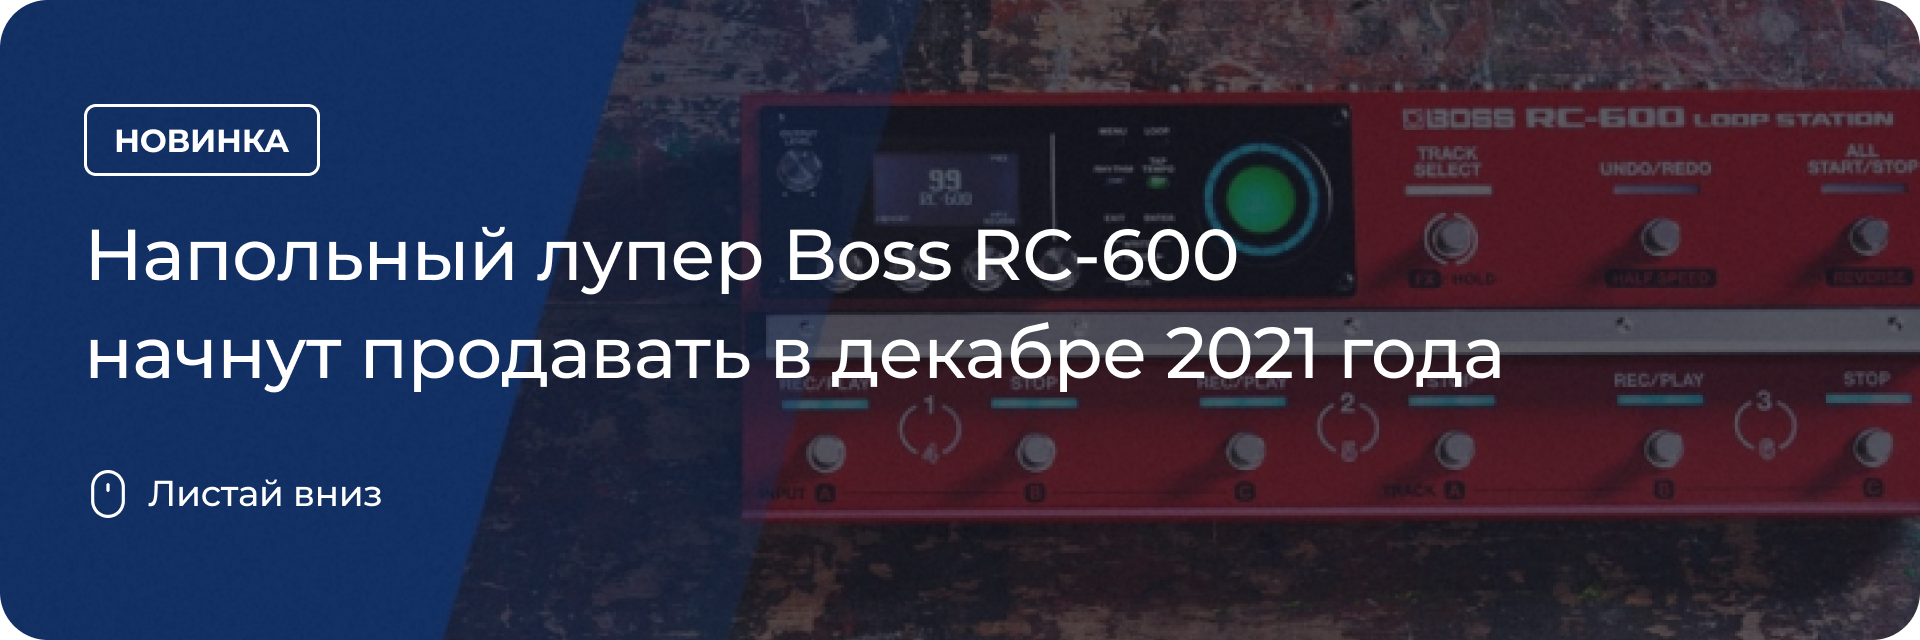 Напольный лупер Boss RC-600